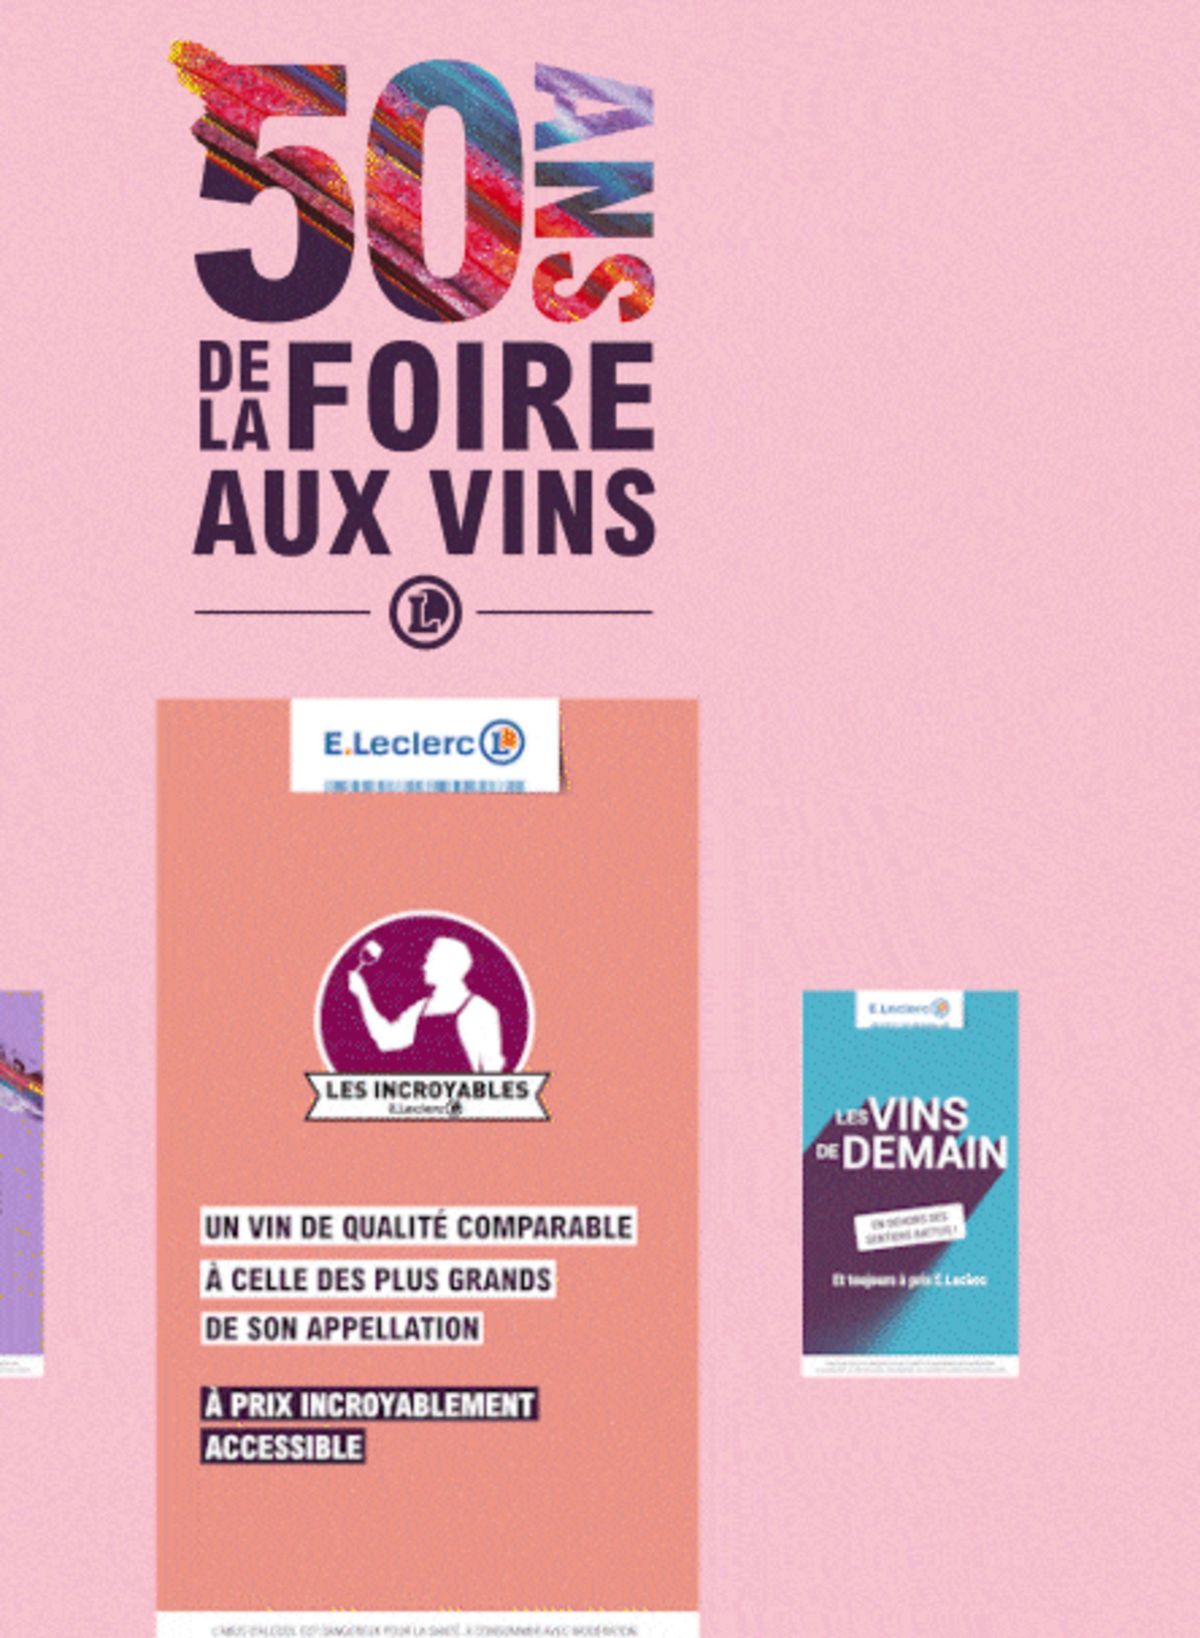 Catalogue Foire Aux Vins - Mixte, page 00671